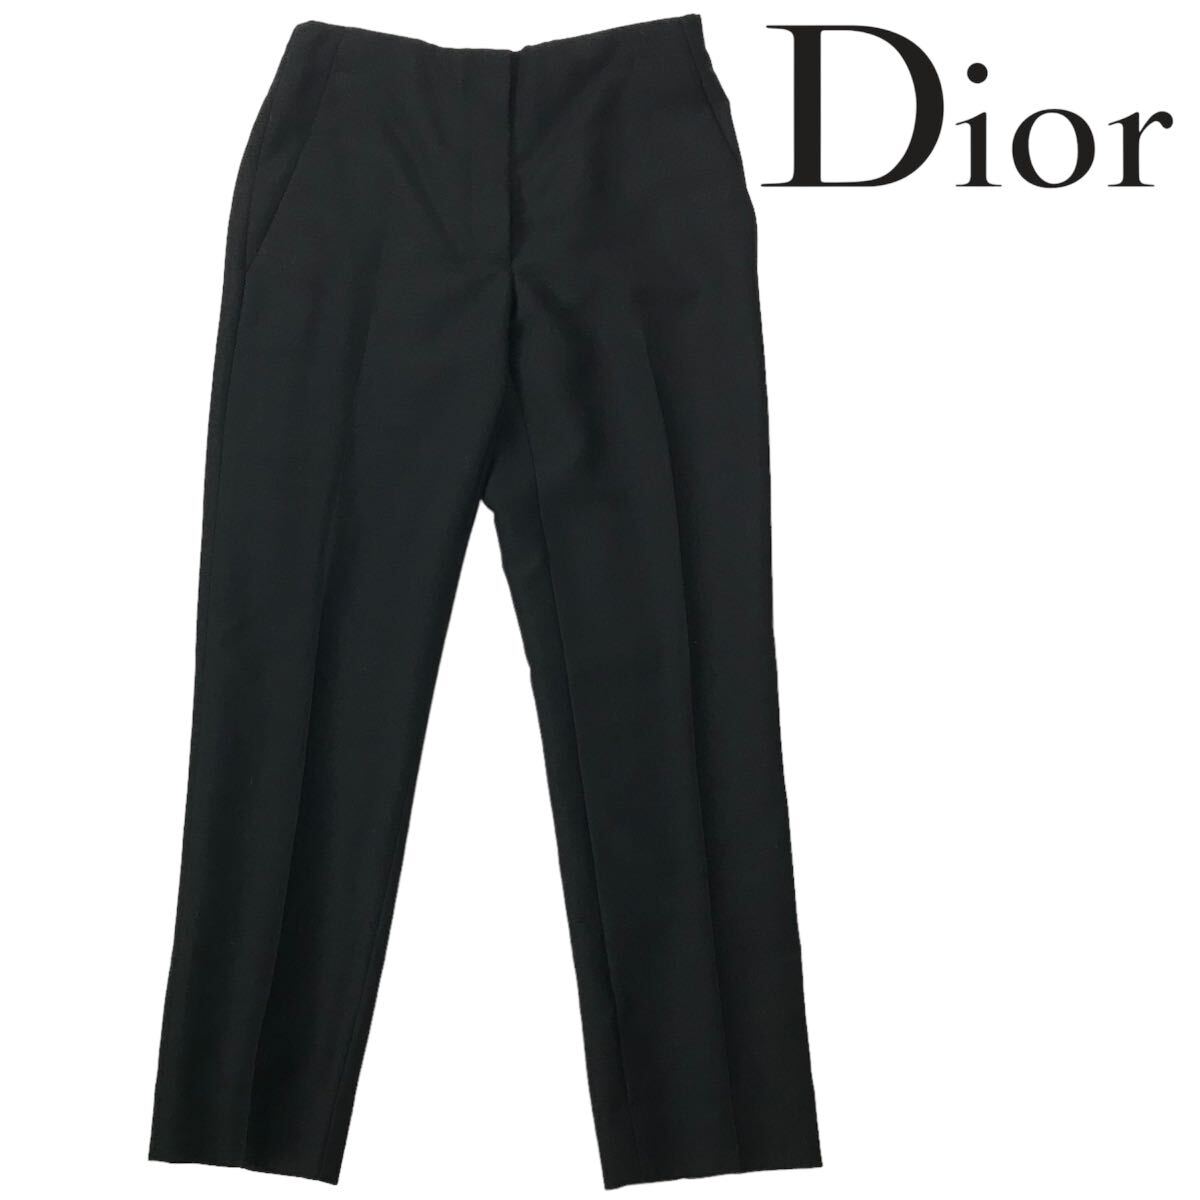 h231 Christian Dior ディオール パンツ スラックス フォーマル ビジネス センタープレス クロップドパンツ 黒 38 正規品 モヘア ウール_画像1